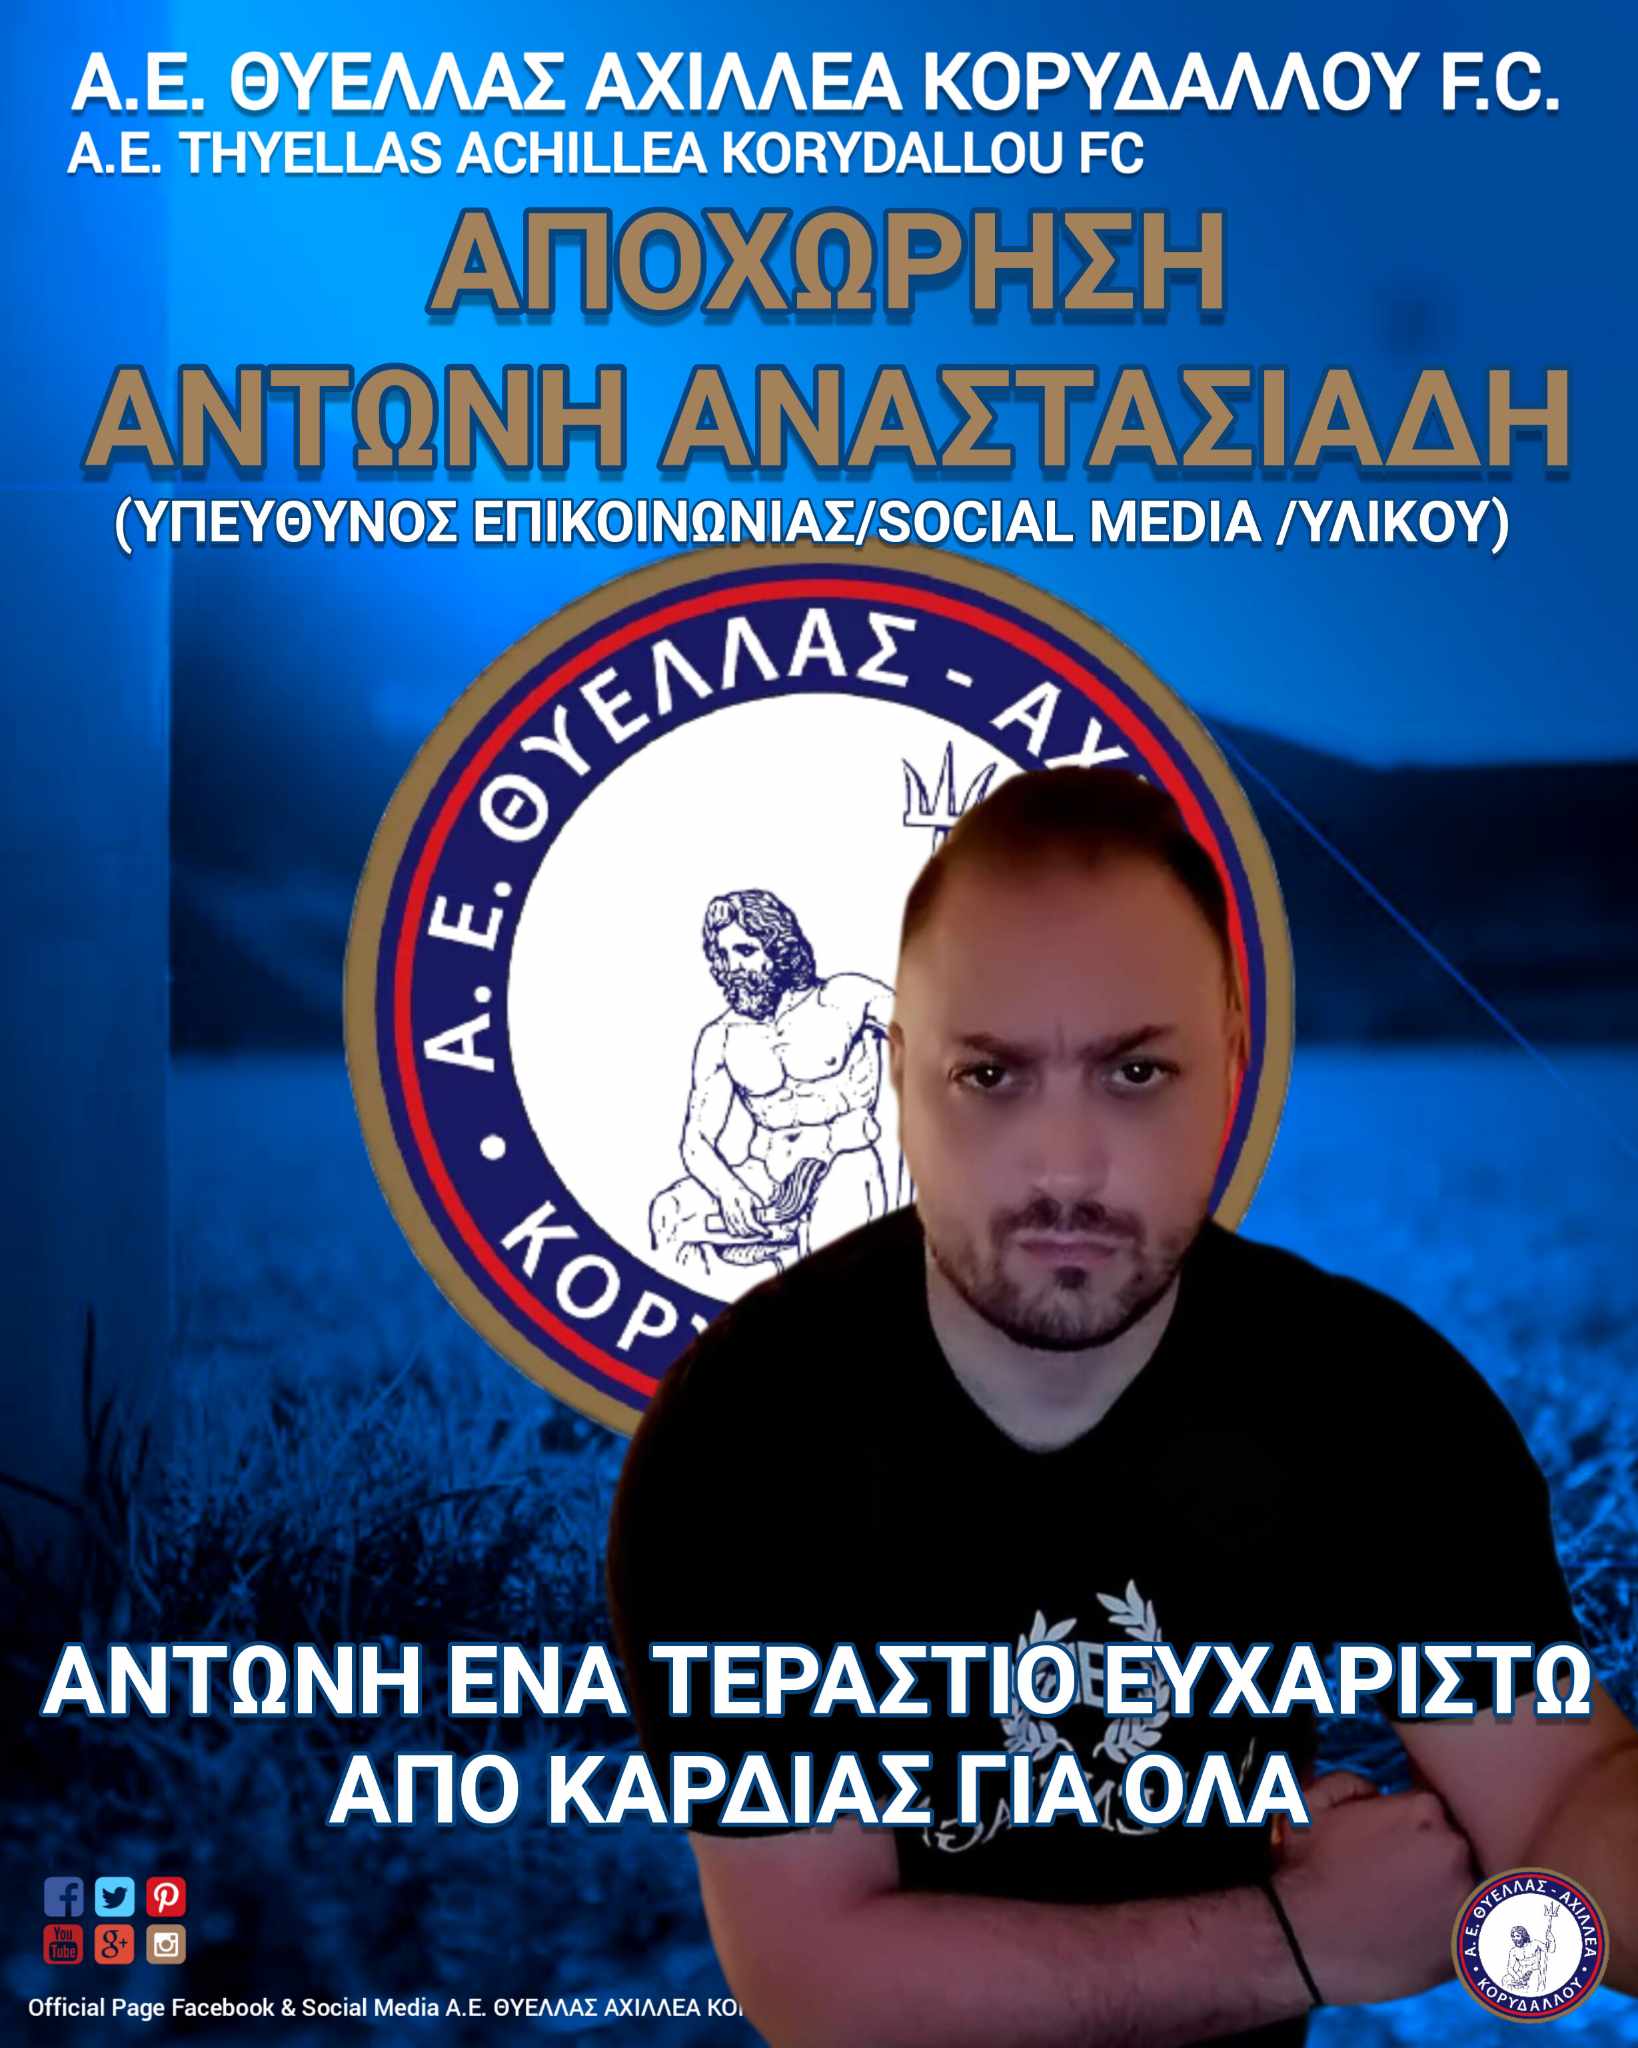 Αποχώρησε από την ΑΕ Θύελλα Αχιλλέα Κορυδαλλού ο υπεύθυνος τύπου Αντώνης Αναστασιάδης